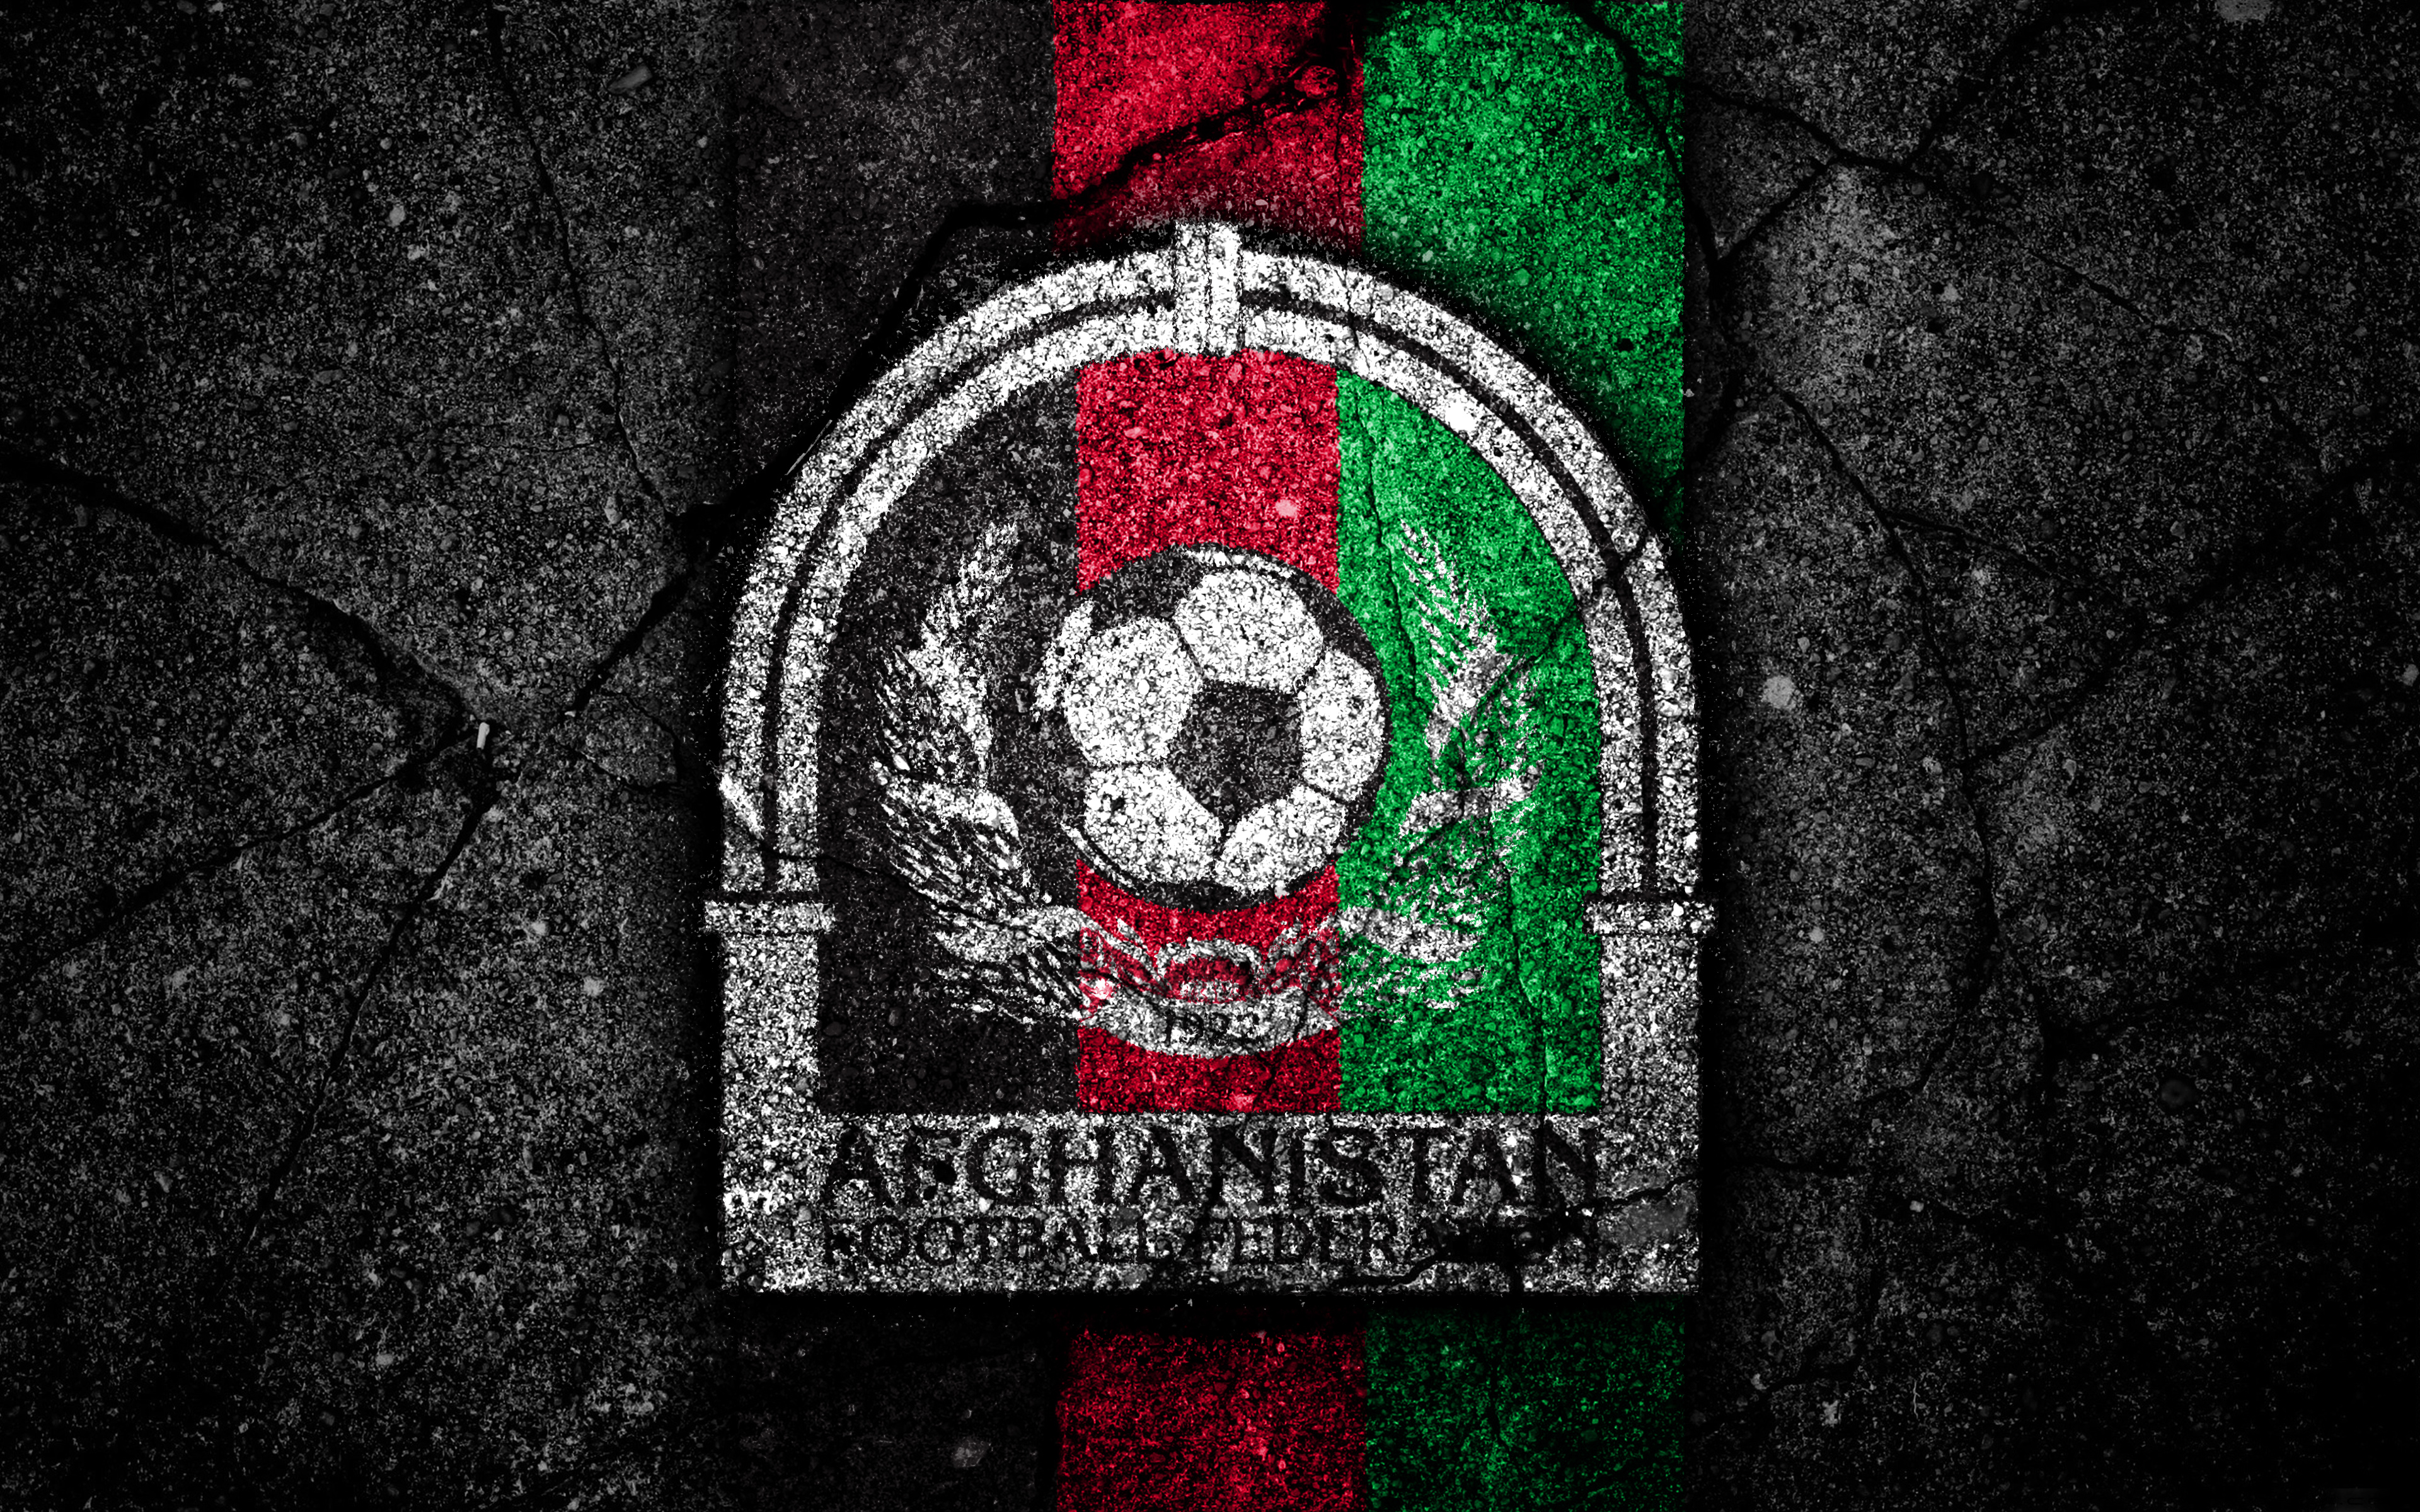 Скачать обои Афганистан на телефон бесплатно